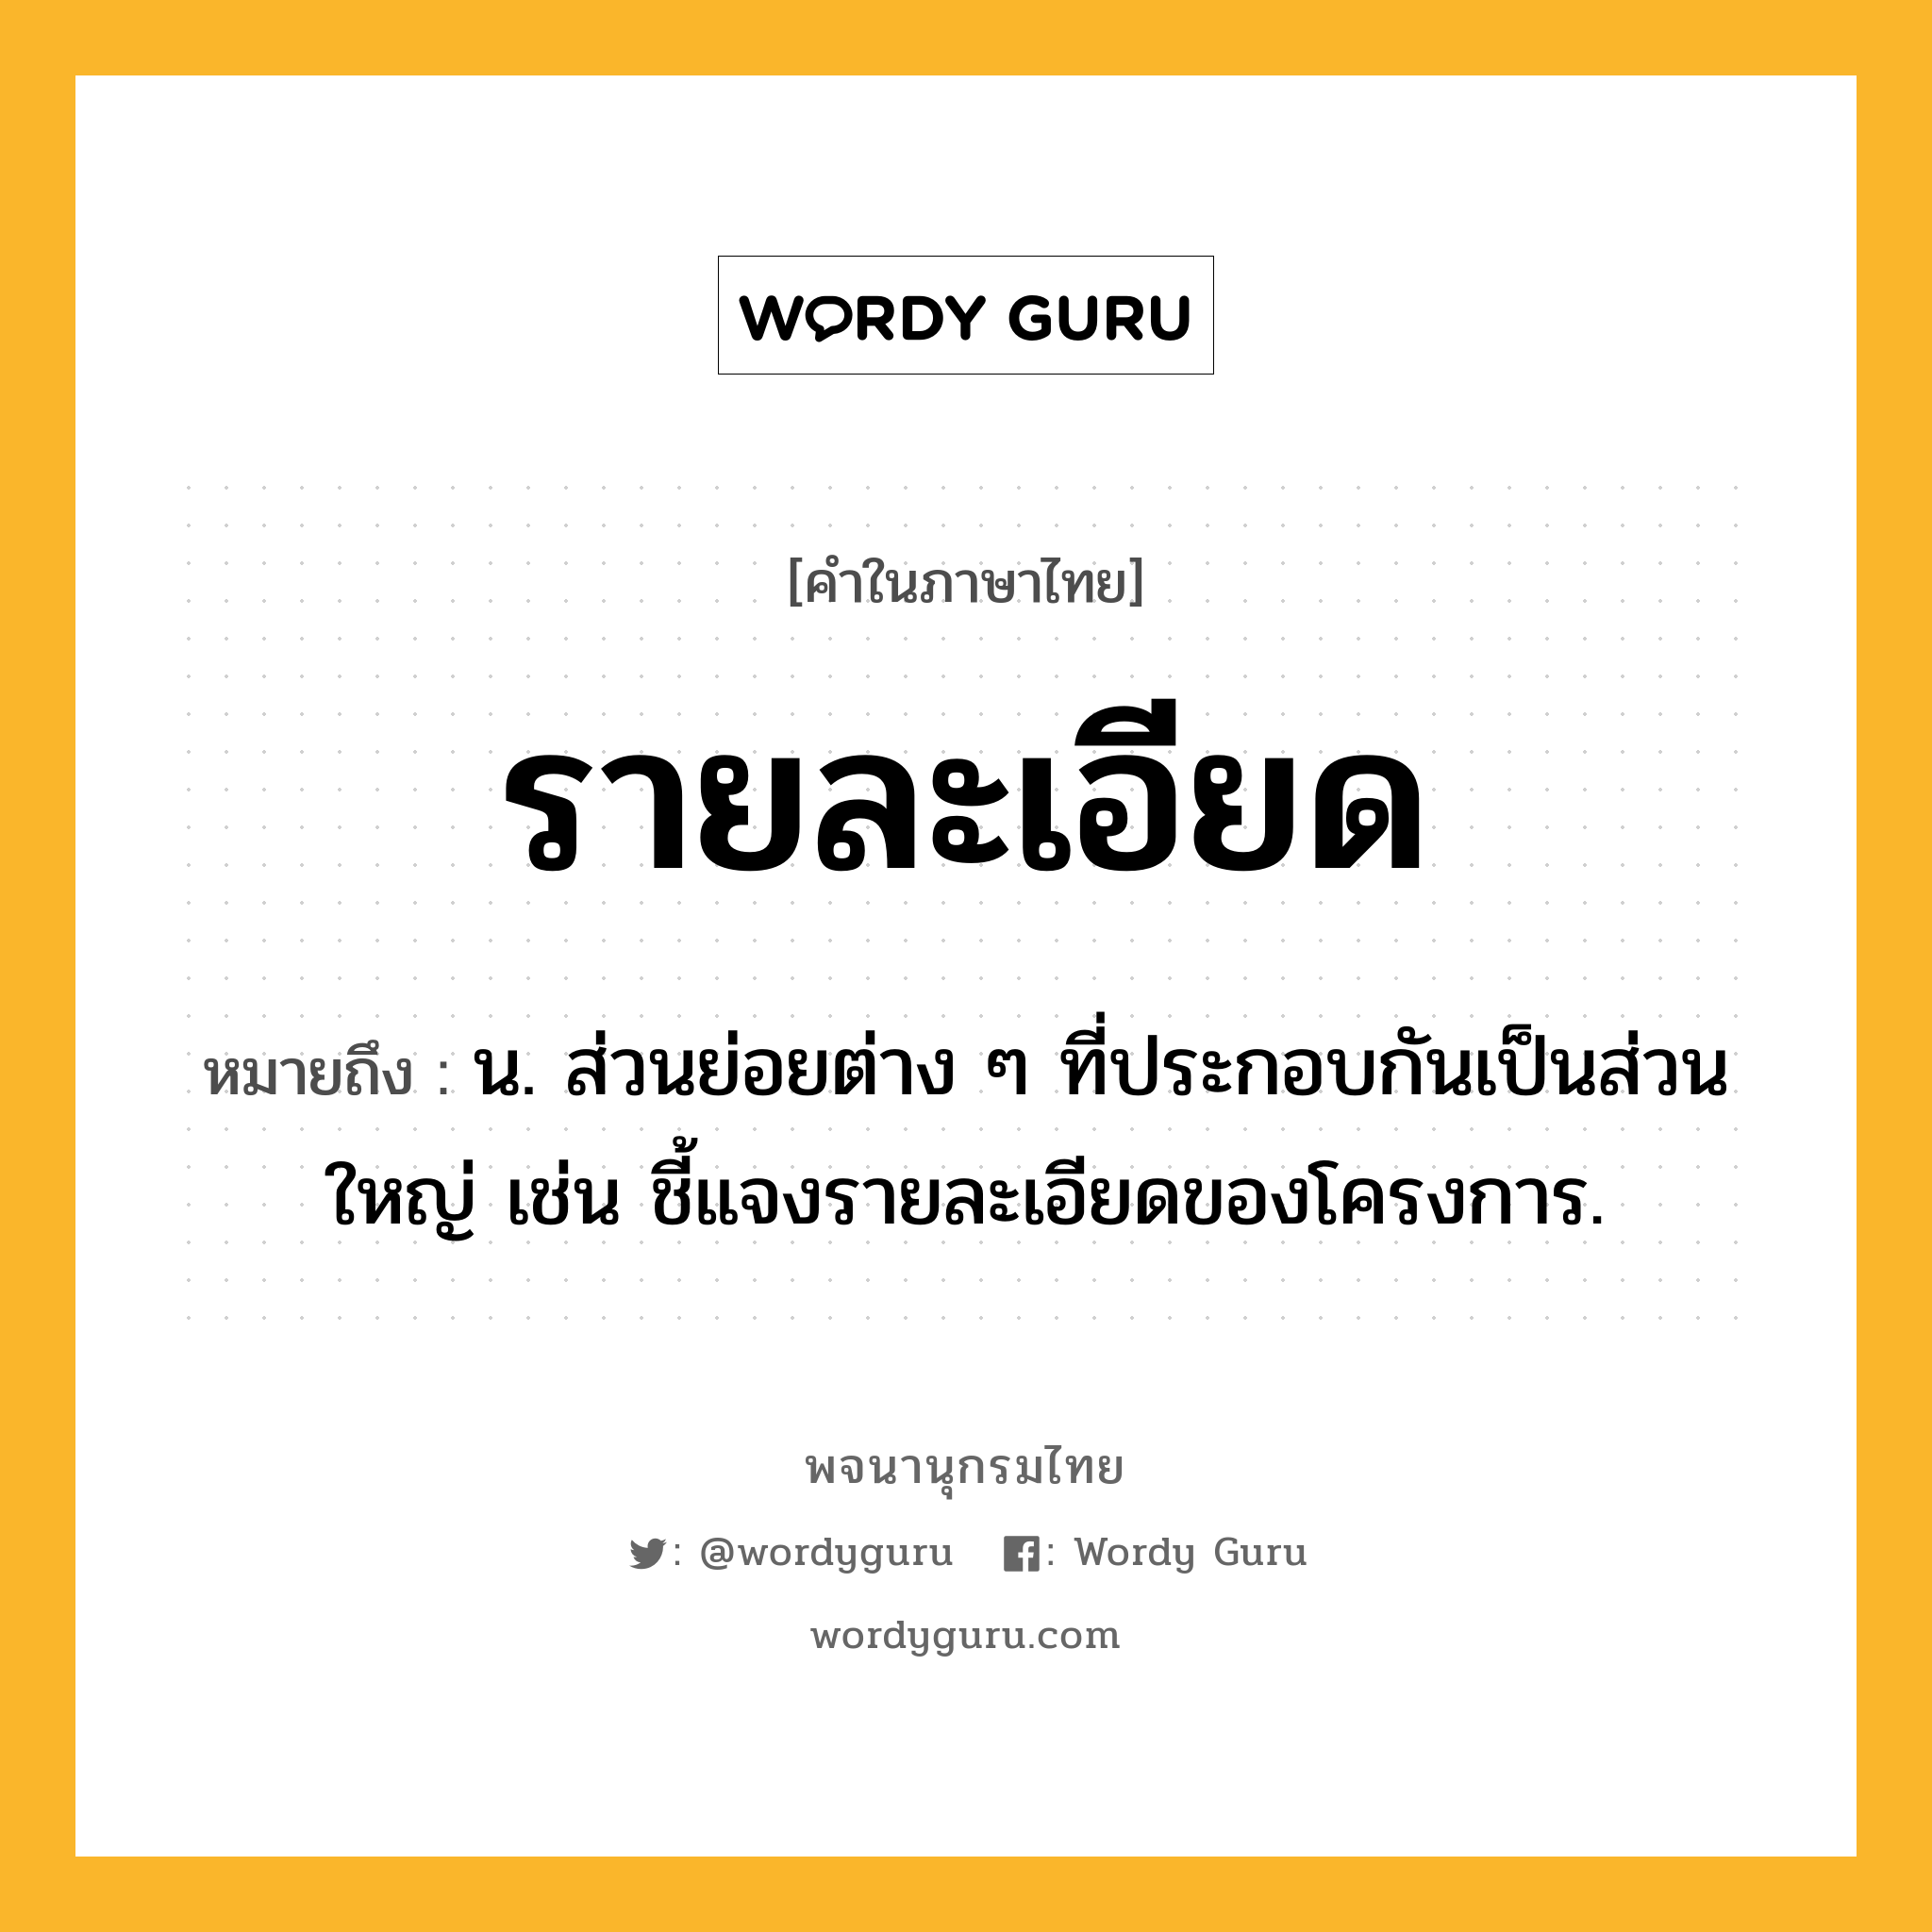 รายละเอียด หมายถึงอะไร?, คำในภาษาไทย รายละเอียด หมายถึง น. ส่วนย่อยต่าง ๆ ที่ประกอบกันเป็นส่วนใหญ่ เช่น ชี้แจงรายละเอียดของโครงการ.